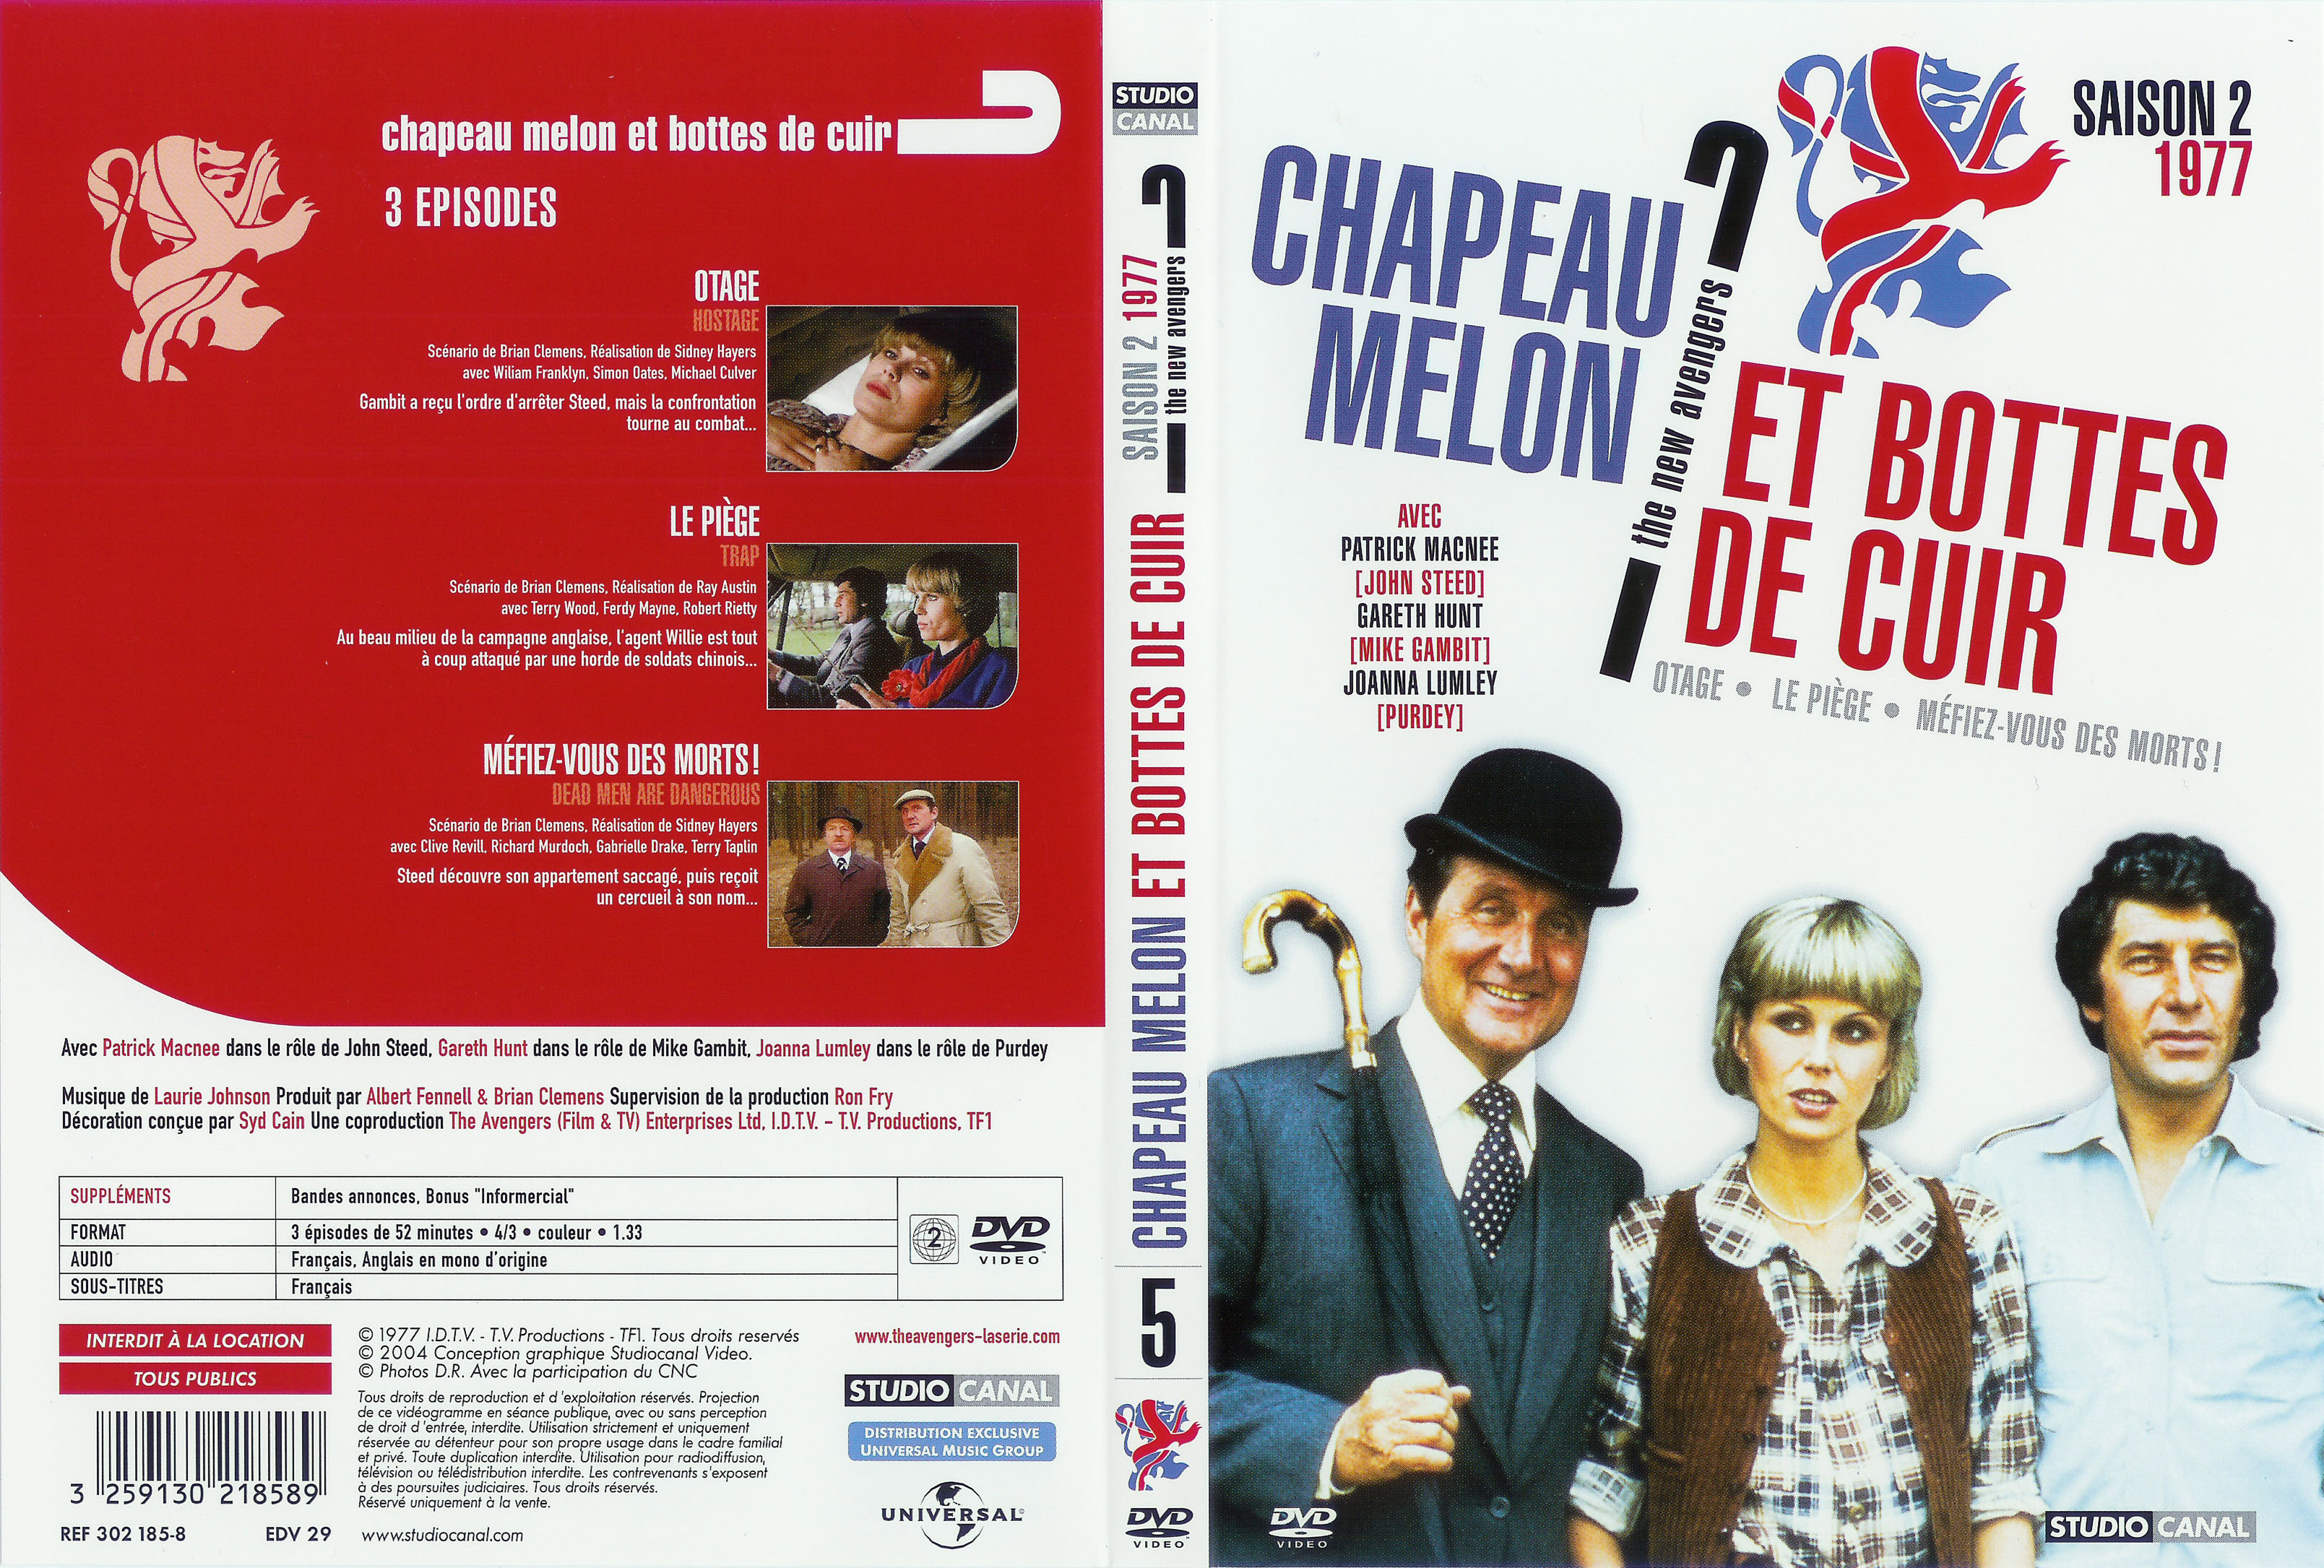 Jaquette DVD Chapeau melon et bottes de cuir 1977 vol 1